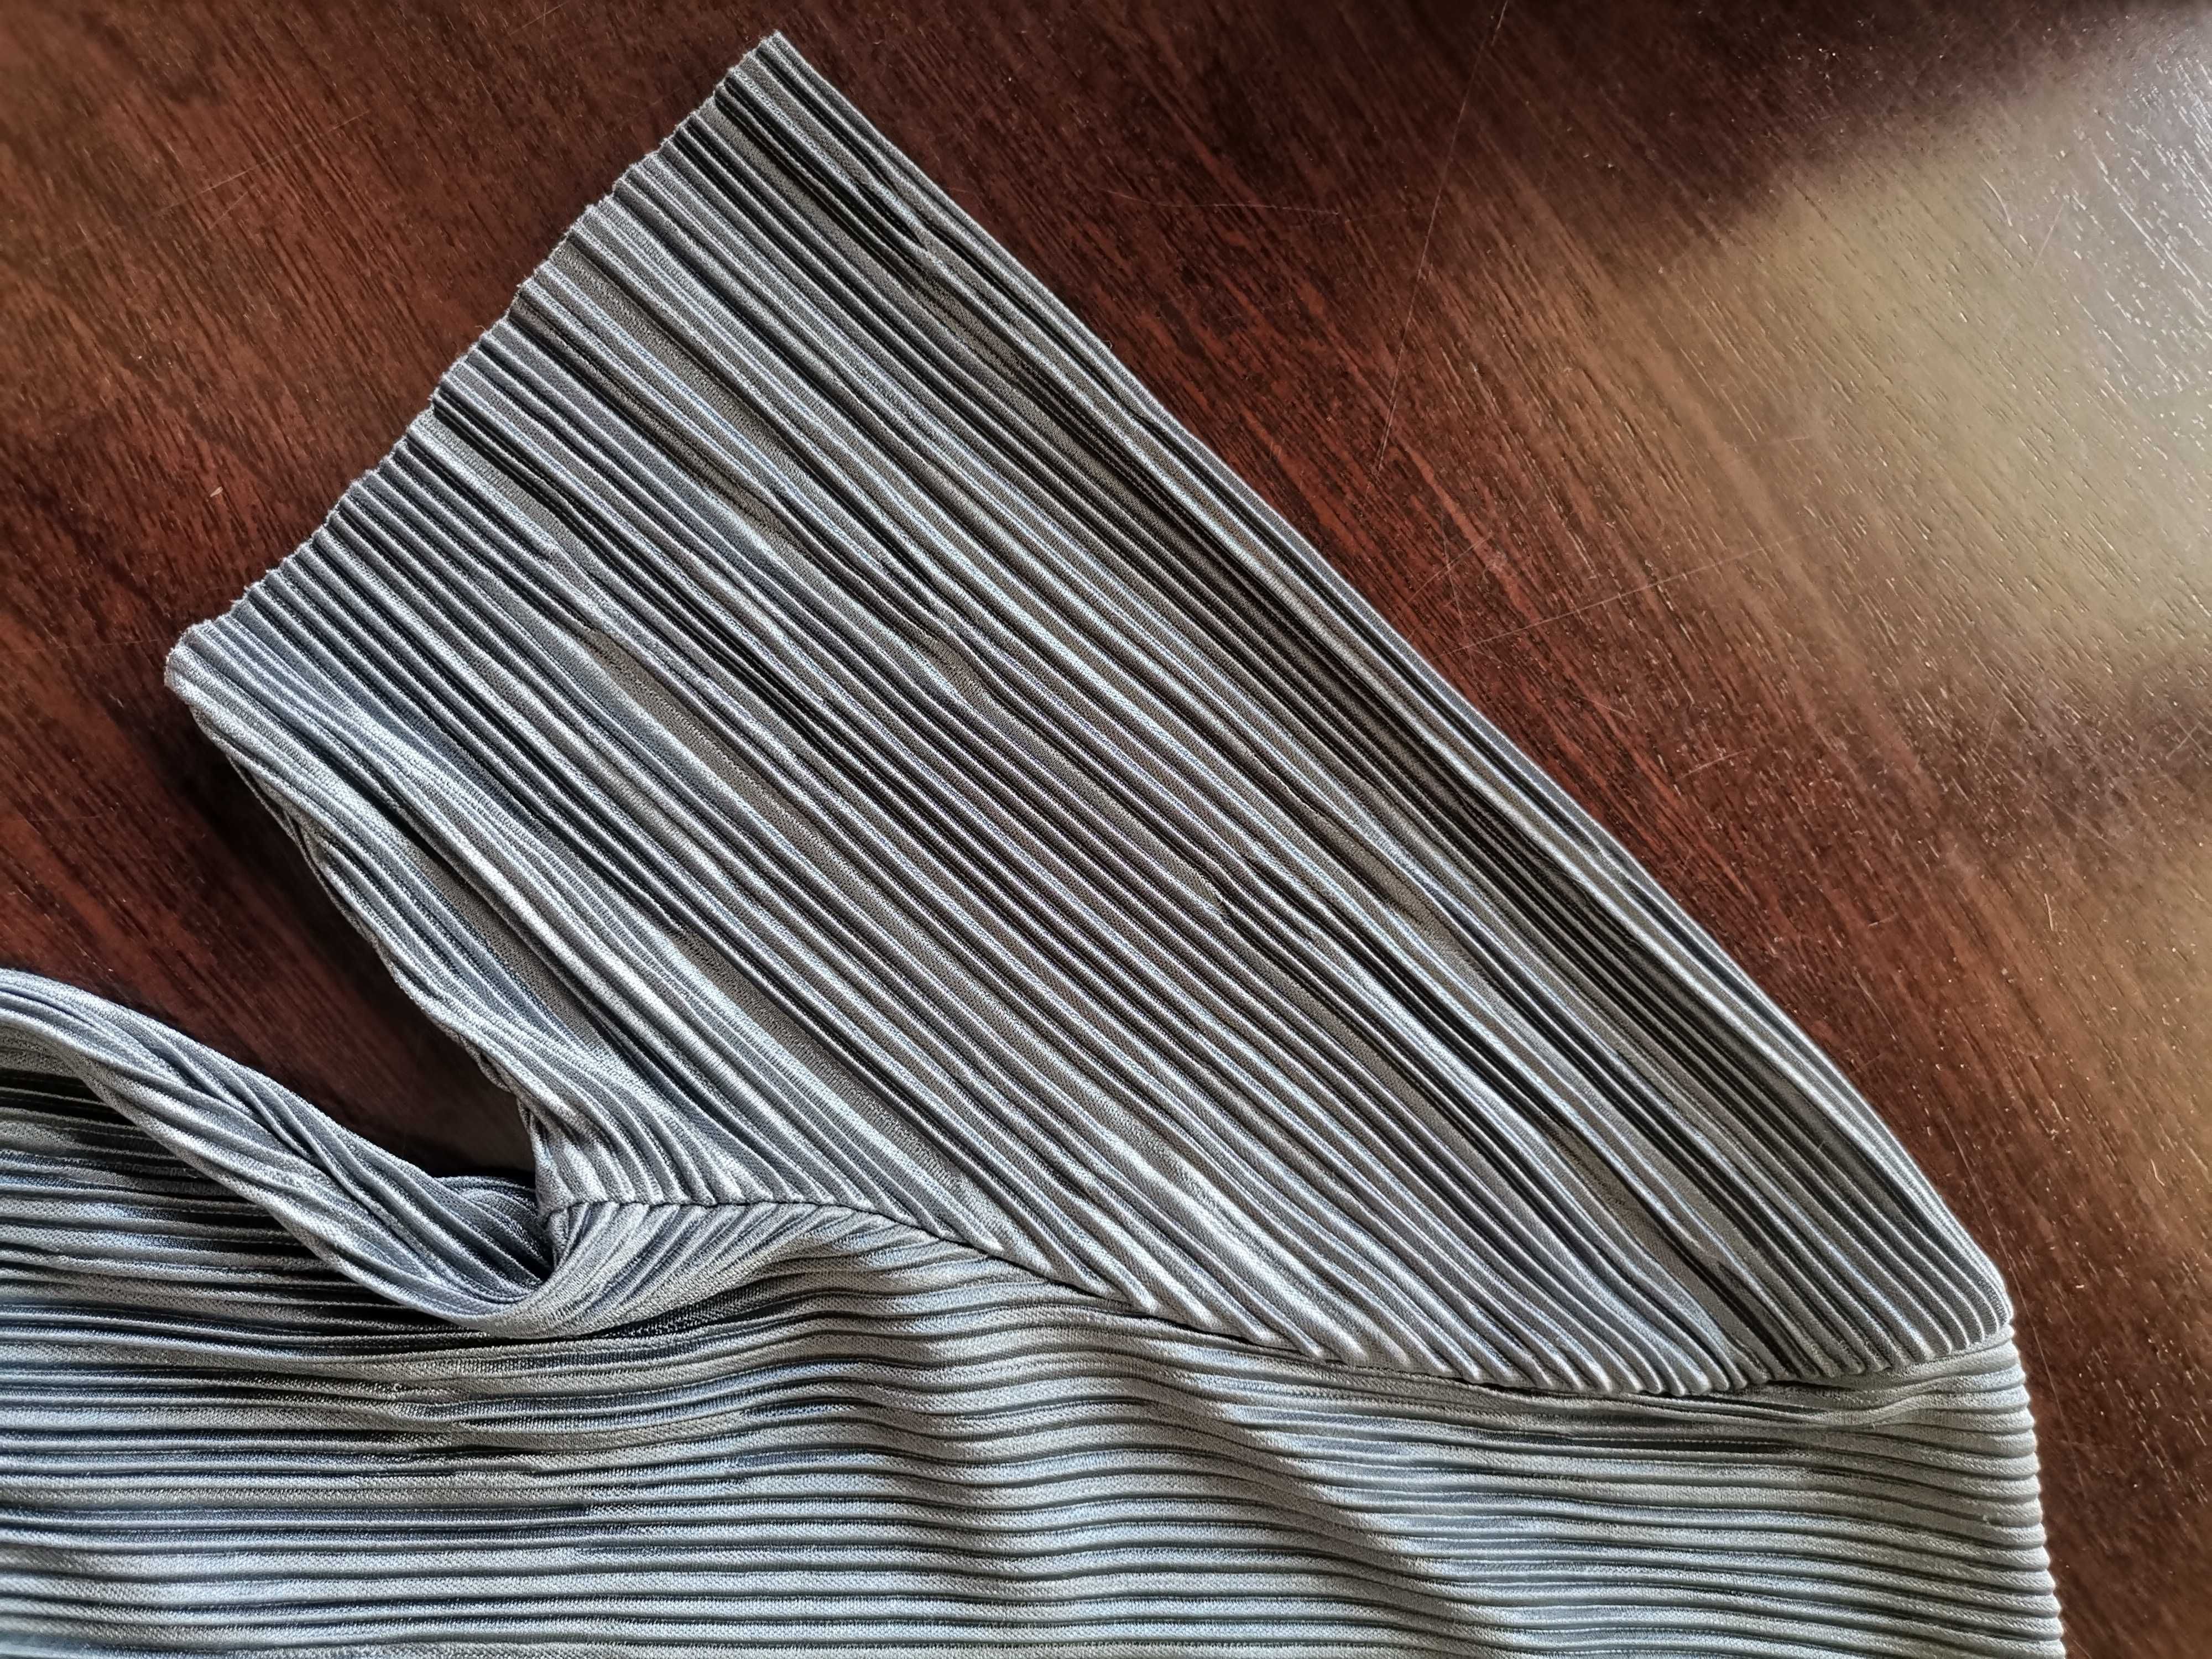 Camisola / t-shirt Zara cinza em tecido zigzag - tamanho M / 38 - nova